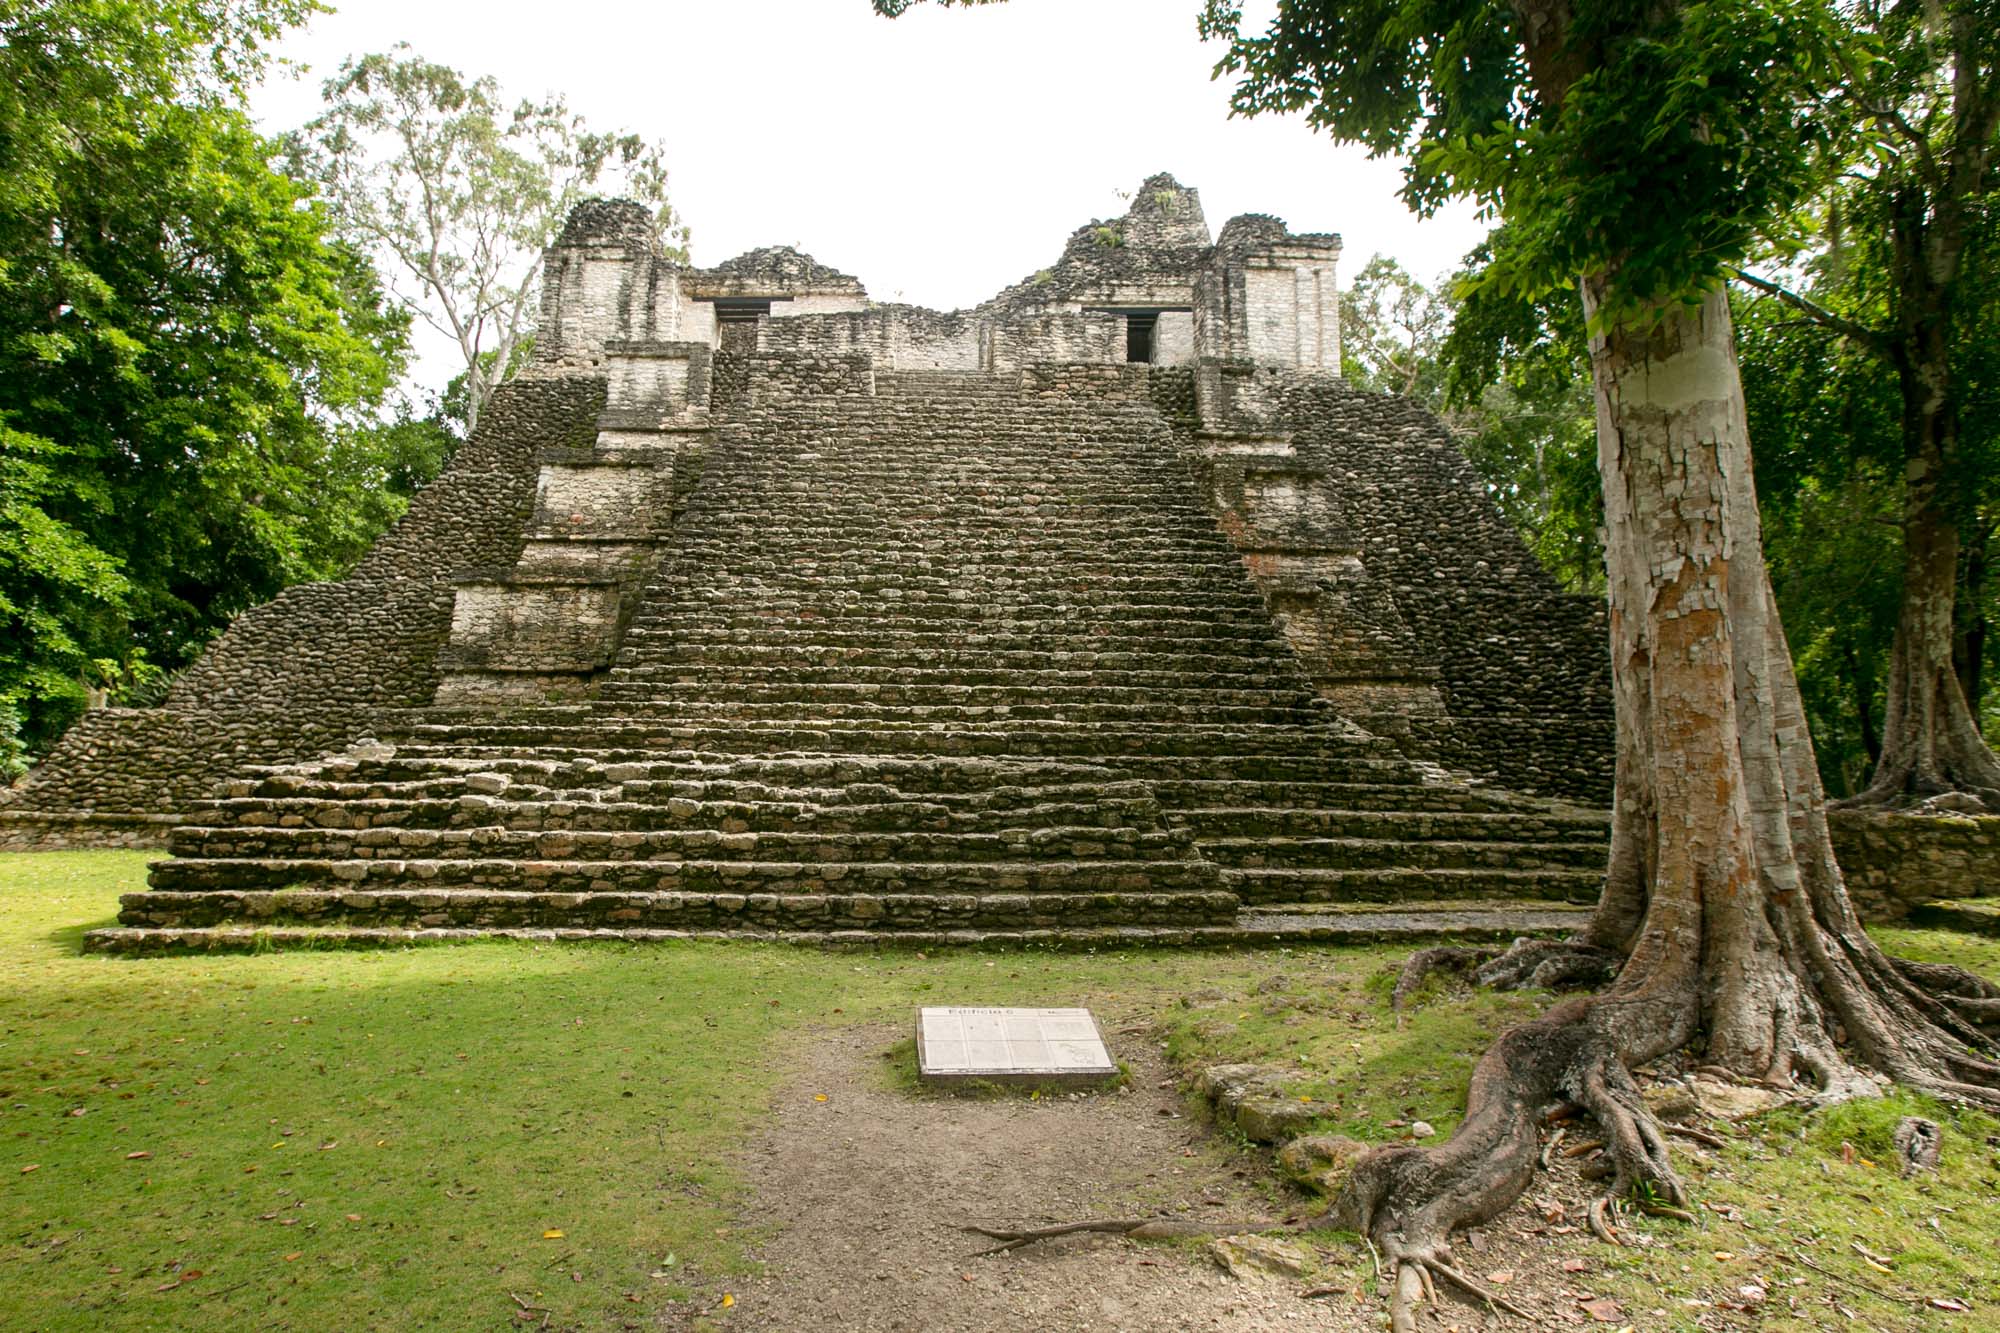 Edificio 6 at Mayan ruins of Dzibanche in Mexico